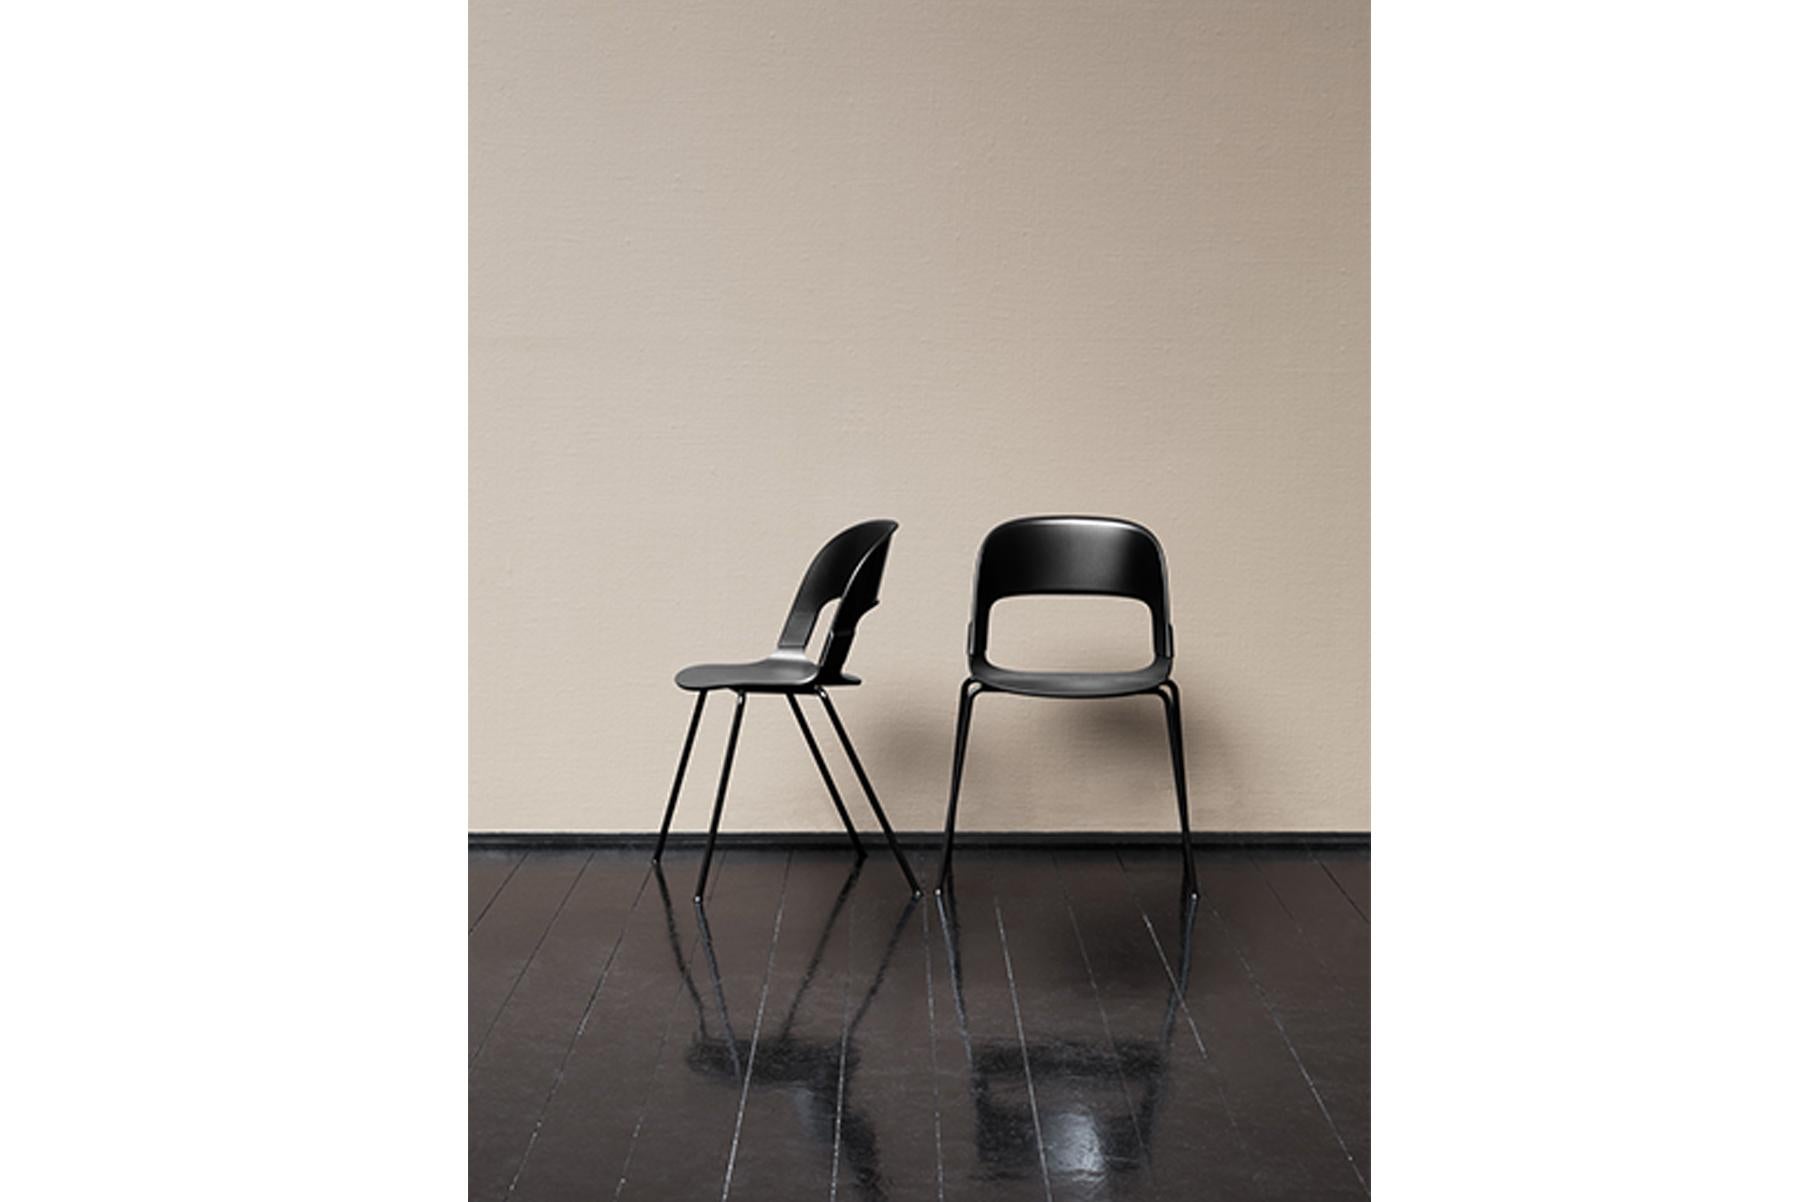 Der Stuhl PAIR ist eine Geschichte von Materialien, Texturen, Licht und Farbe. Sie können die verschiedenen Elemente individuell gestalten und die verschiedenen Farben und Materialien mischen und kombinieren. Dadurch ergeben sich unendlich viele